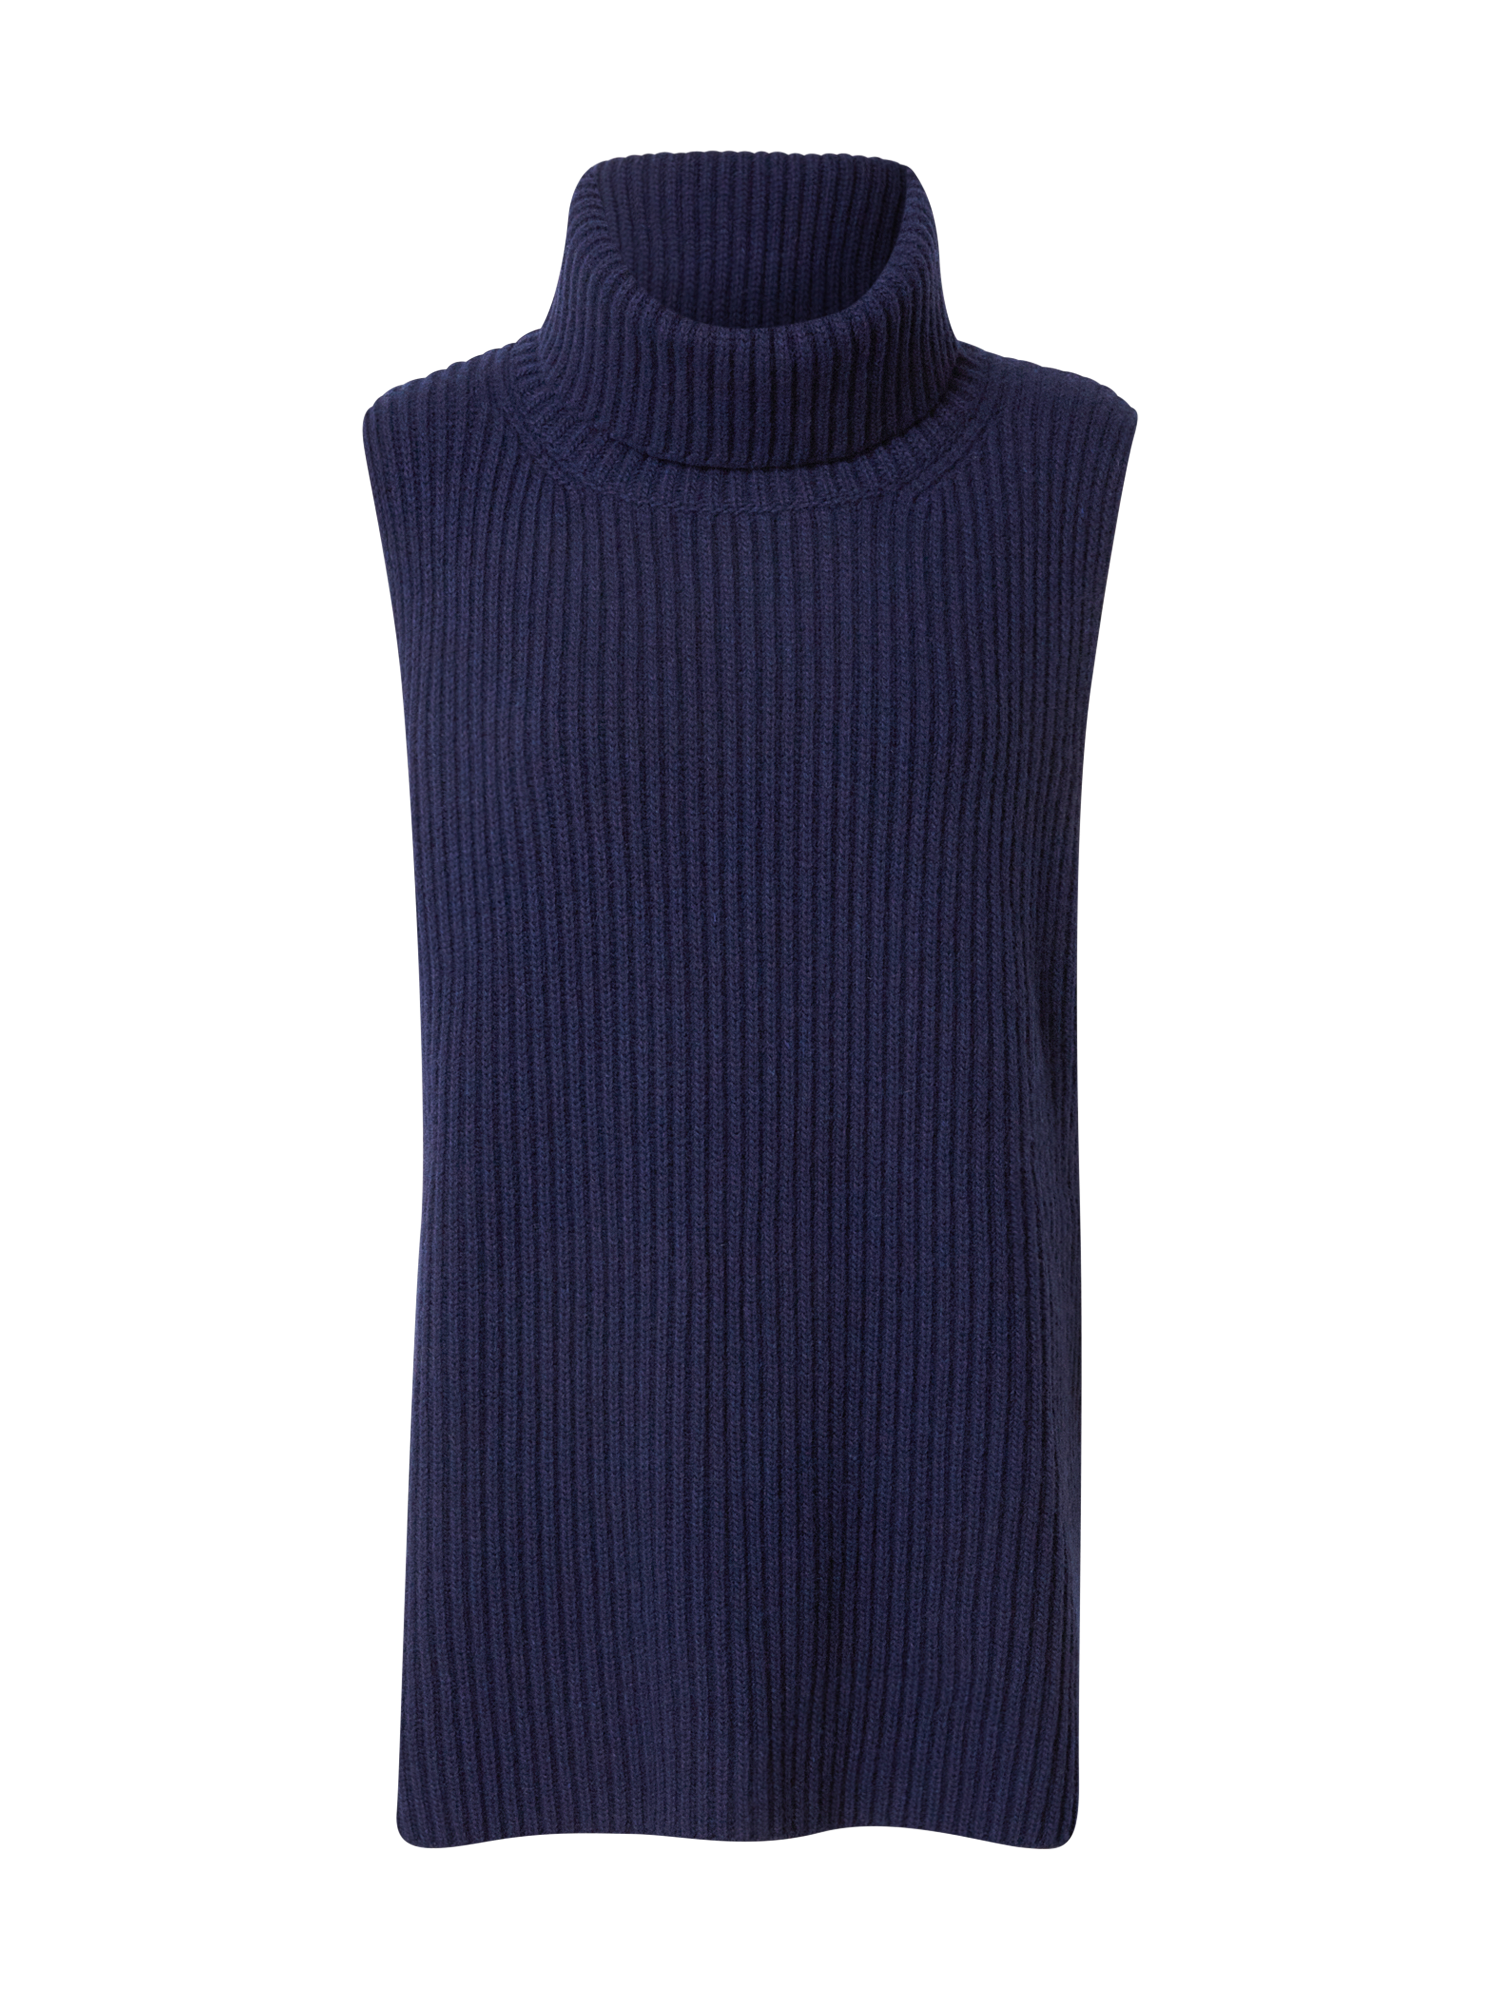 Swetry & dzianina Odzież IVY & OAK Sweter KIARA ROSE w kolorze Granatowym 